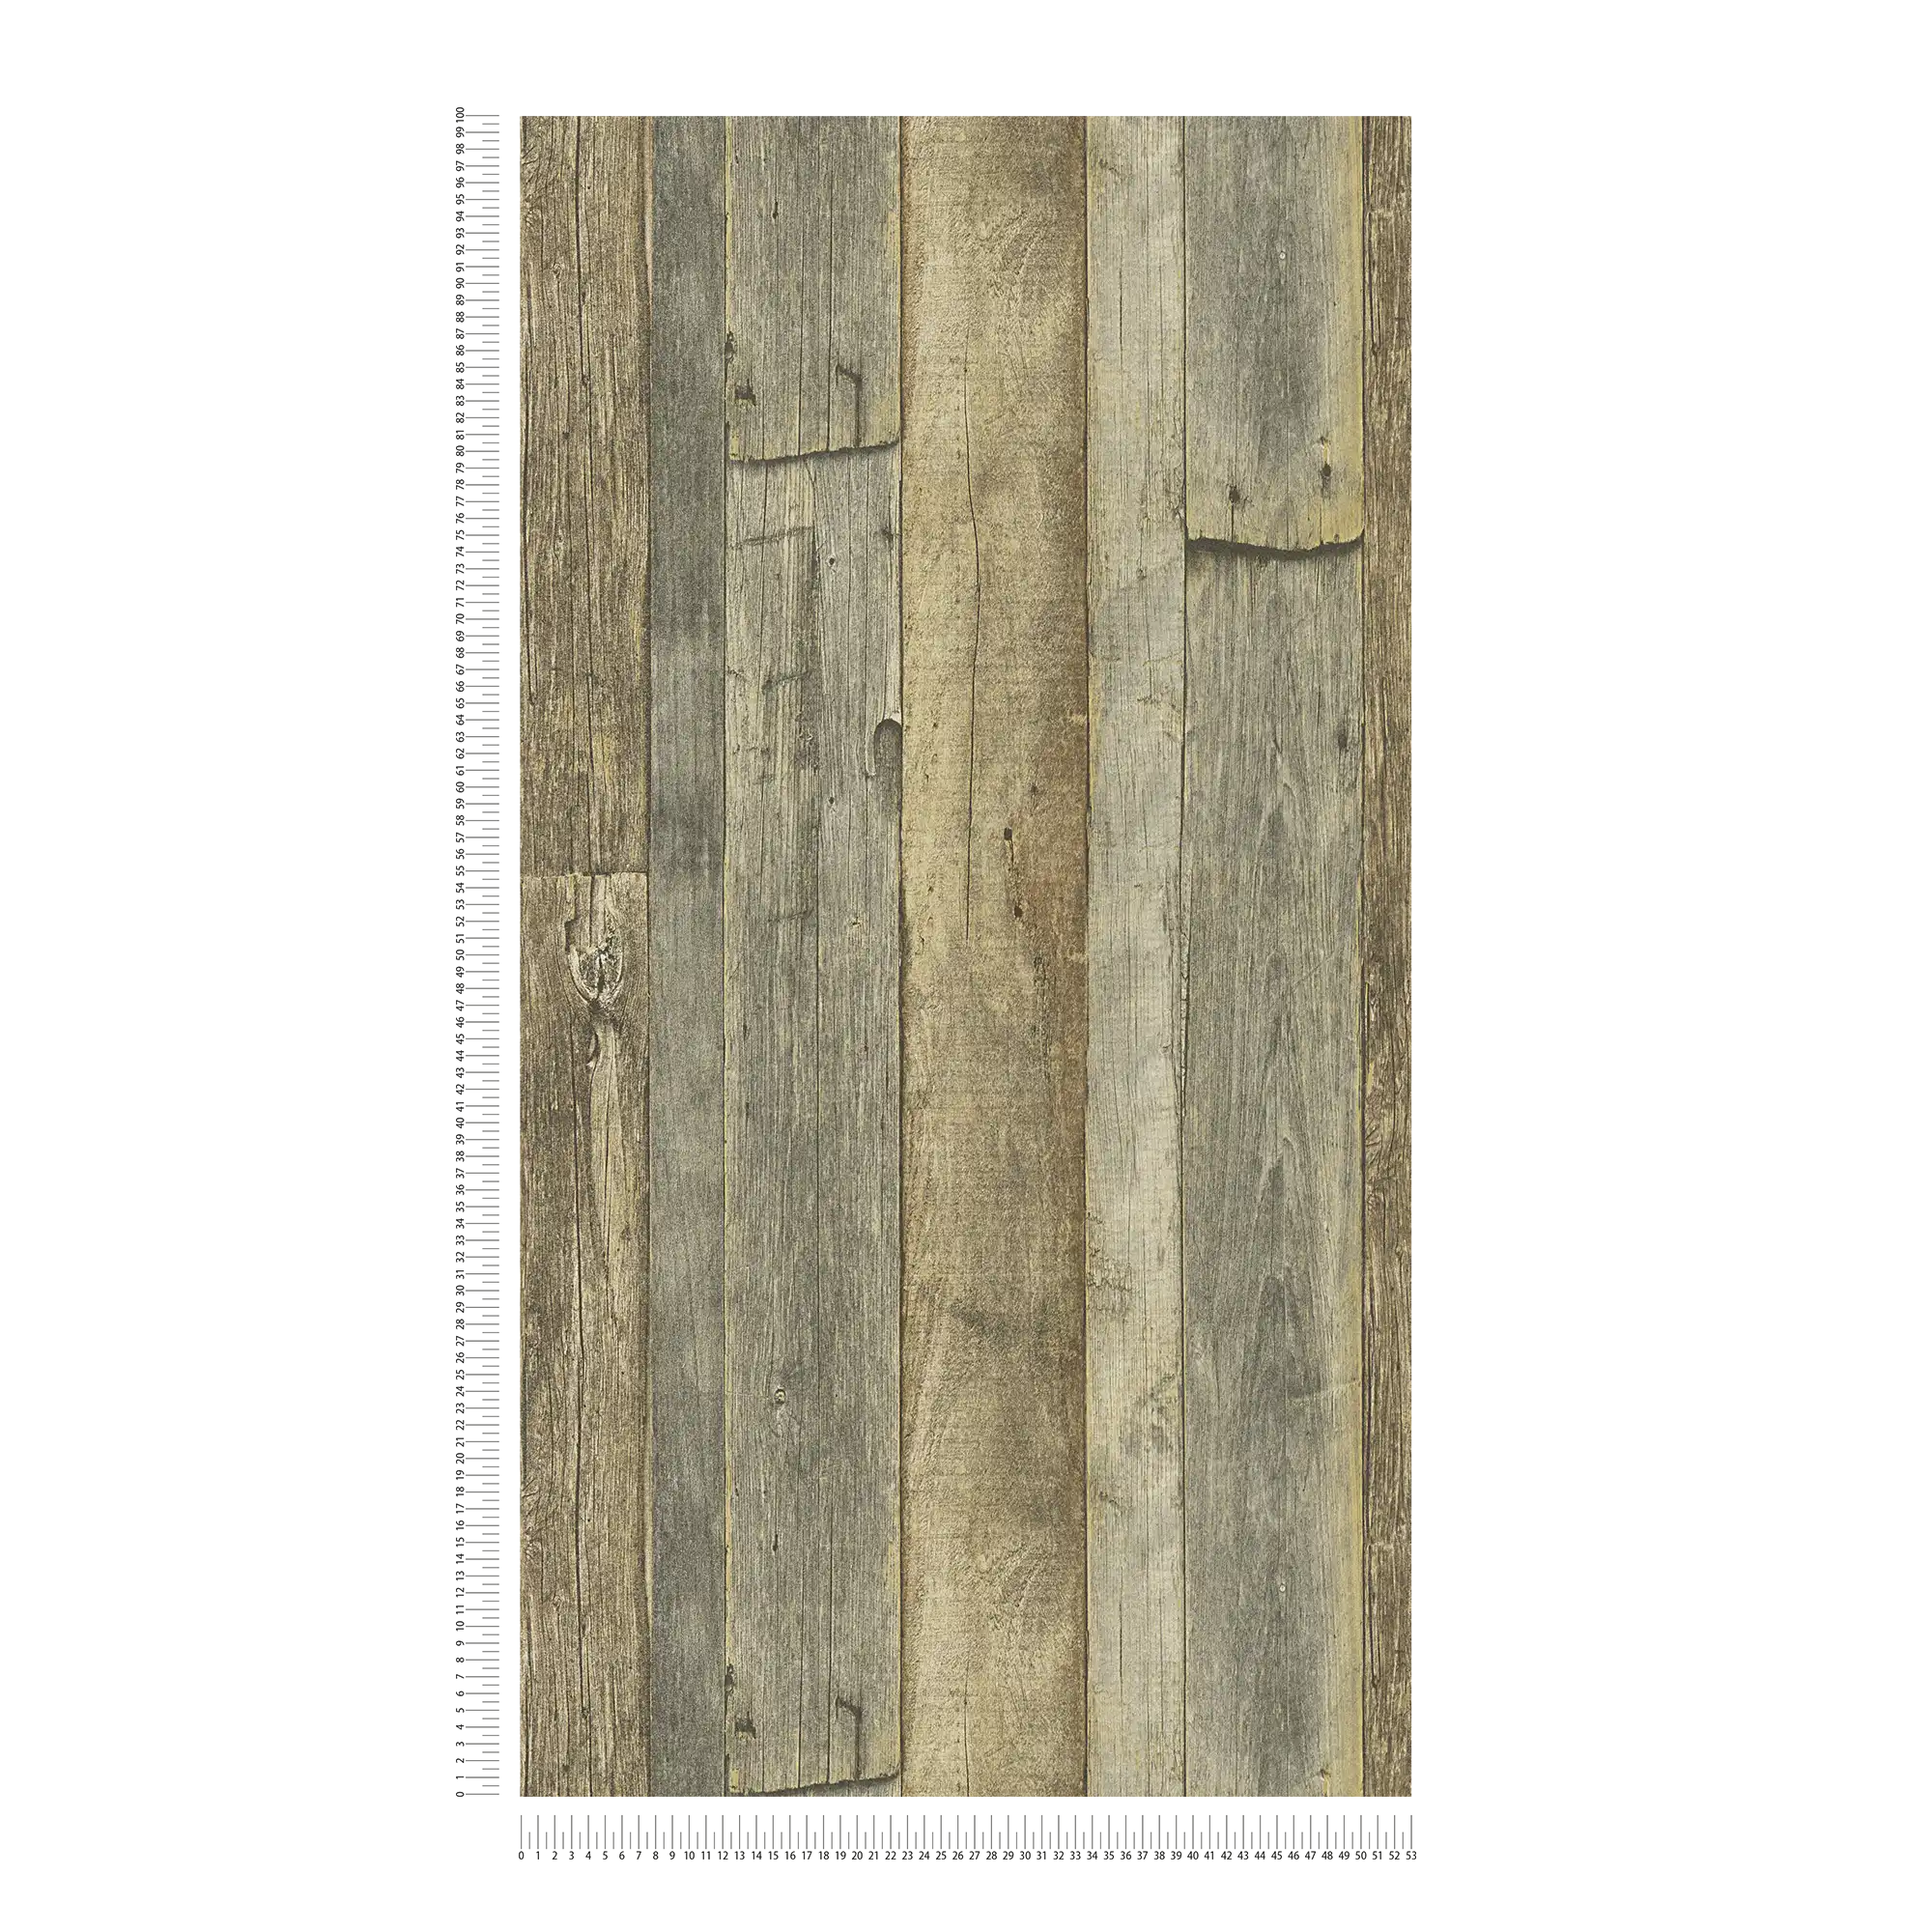             Tapete mit Holzoptik im rustikalen Landhaus Stil – Braun, Gelb, Creme
        